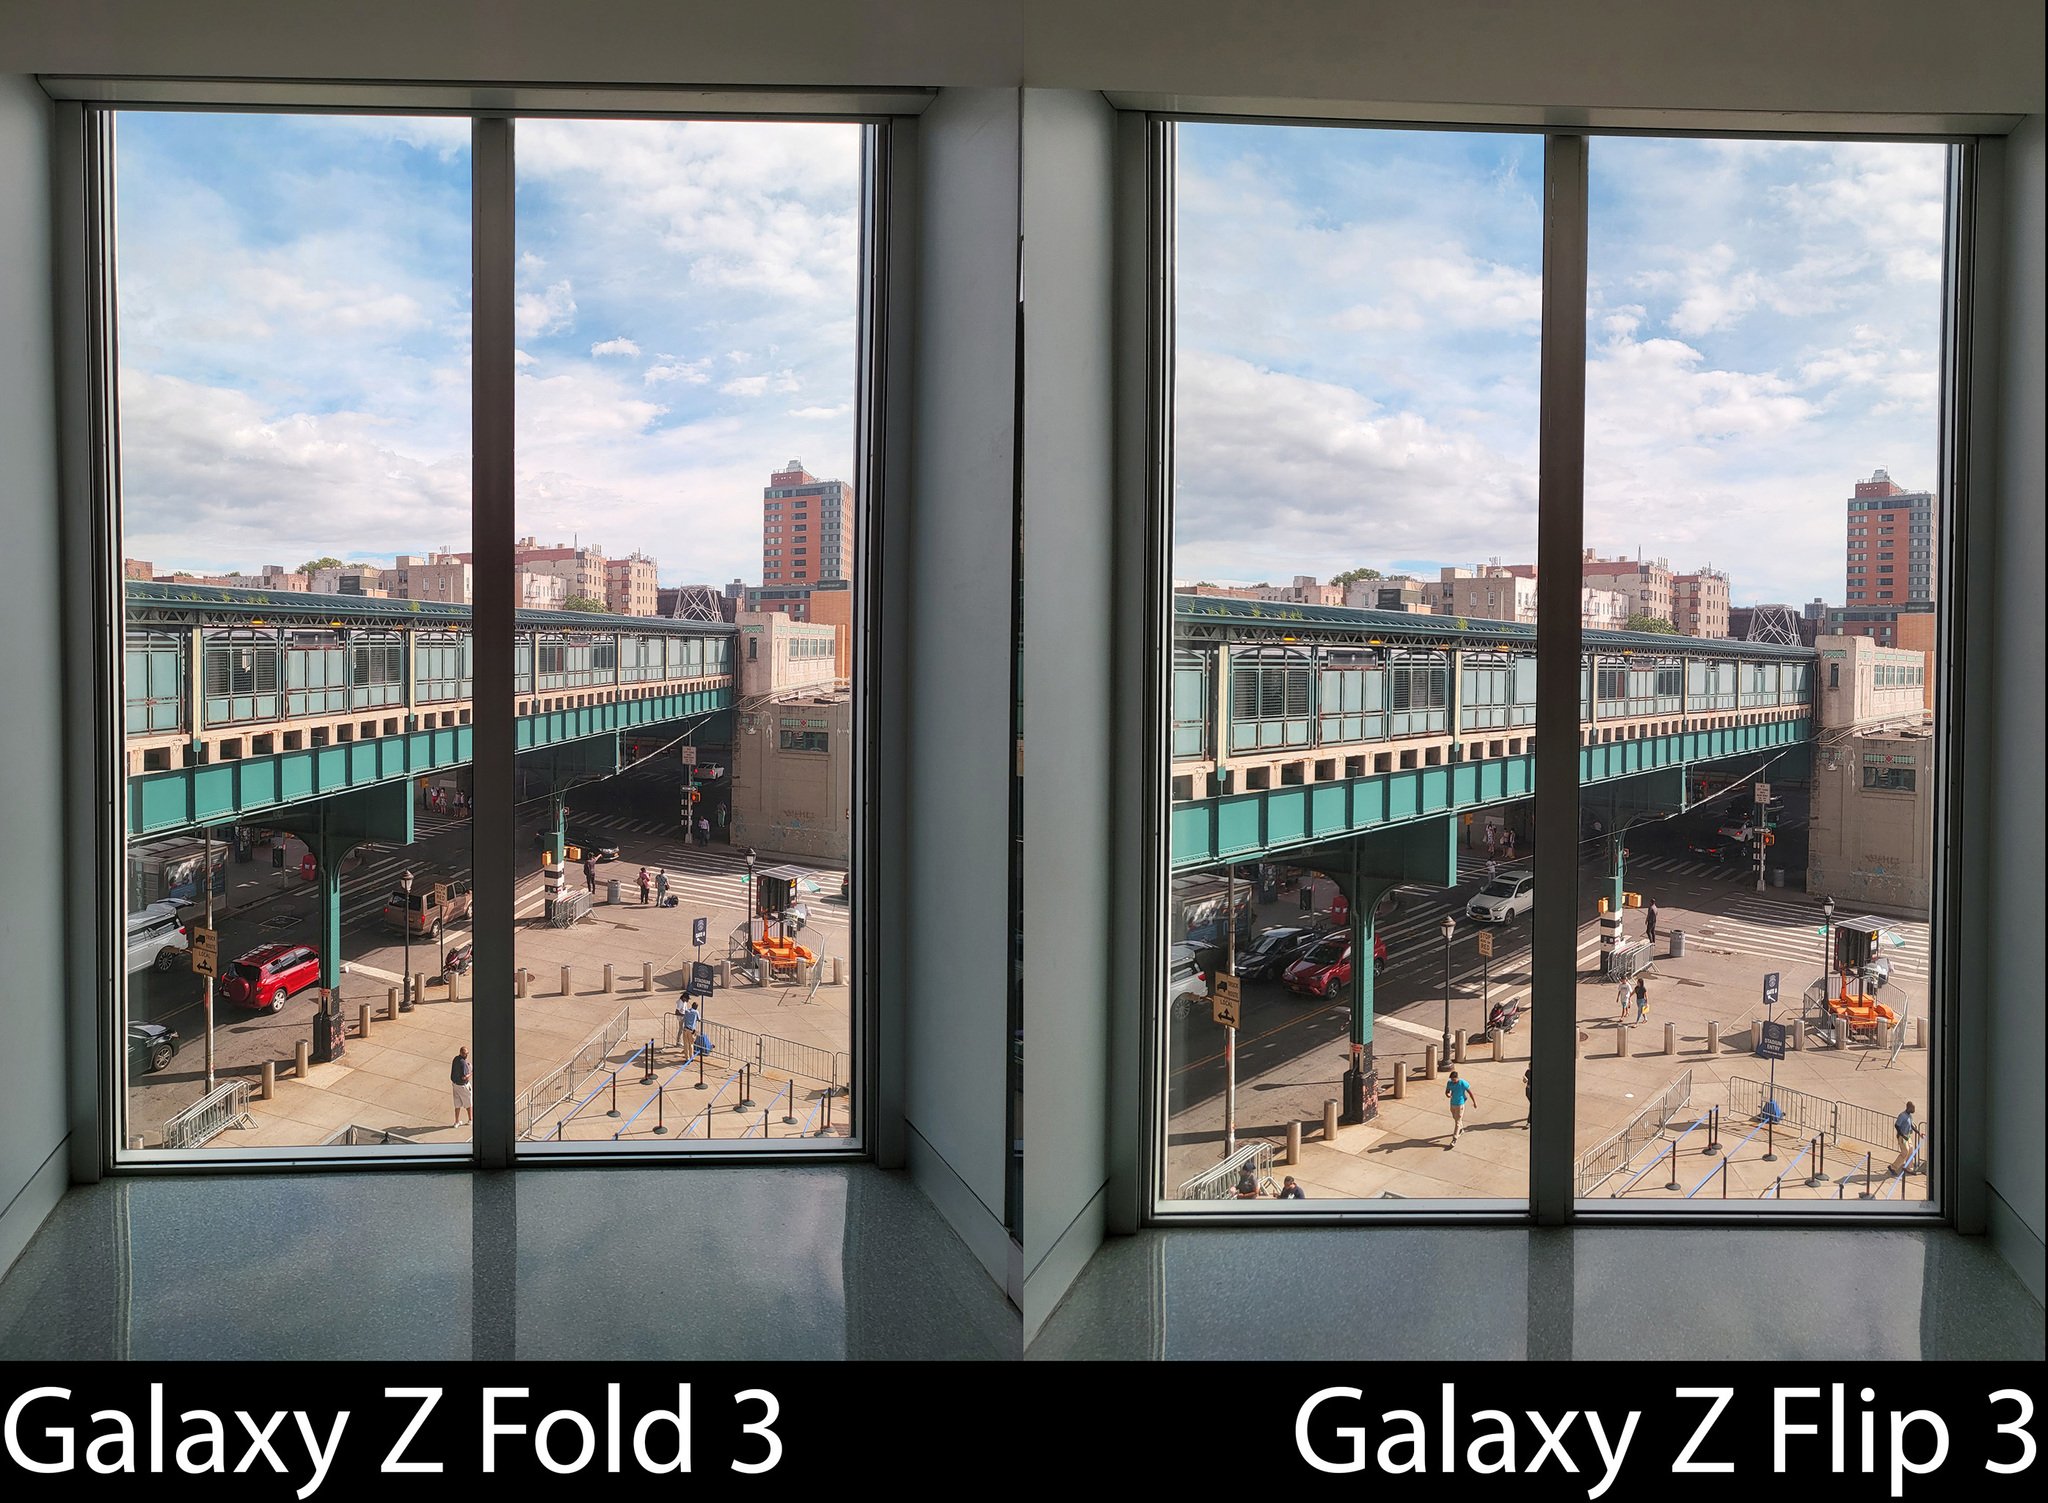 Camera Compare Z Fold 3 Flip 3 Auto 02 Resize